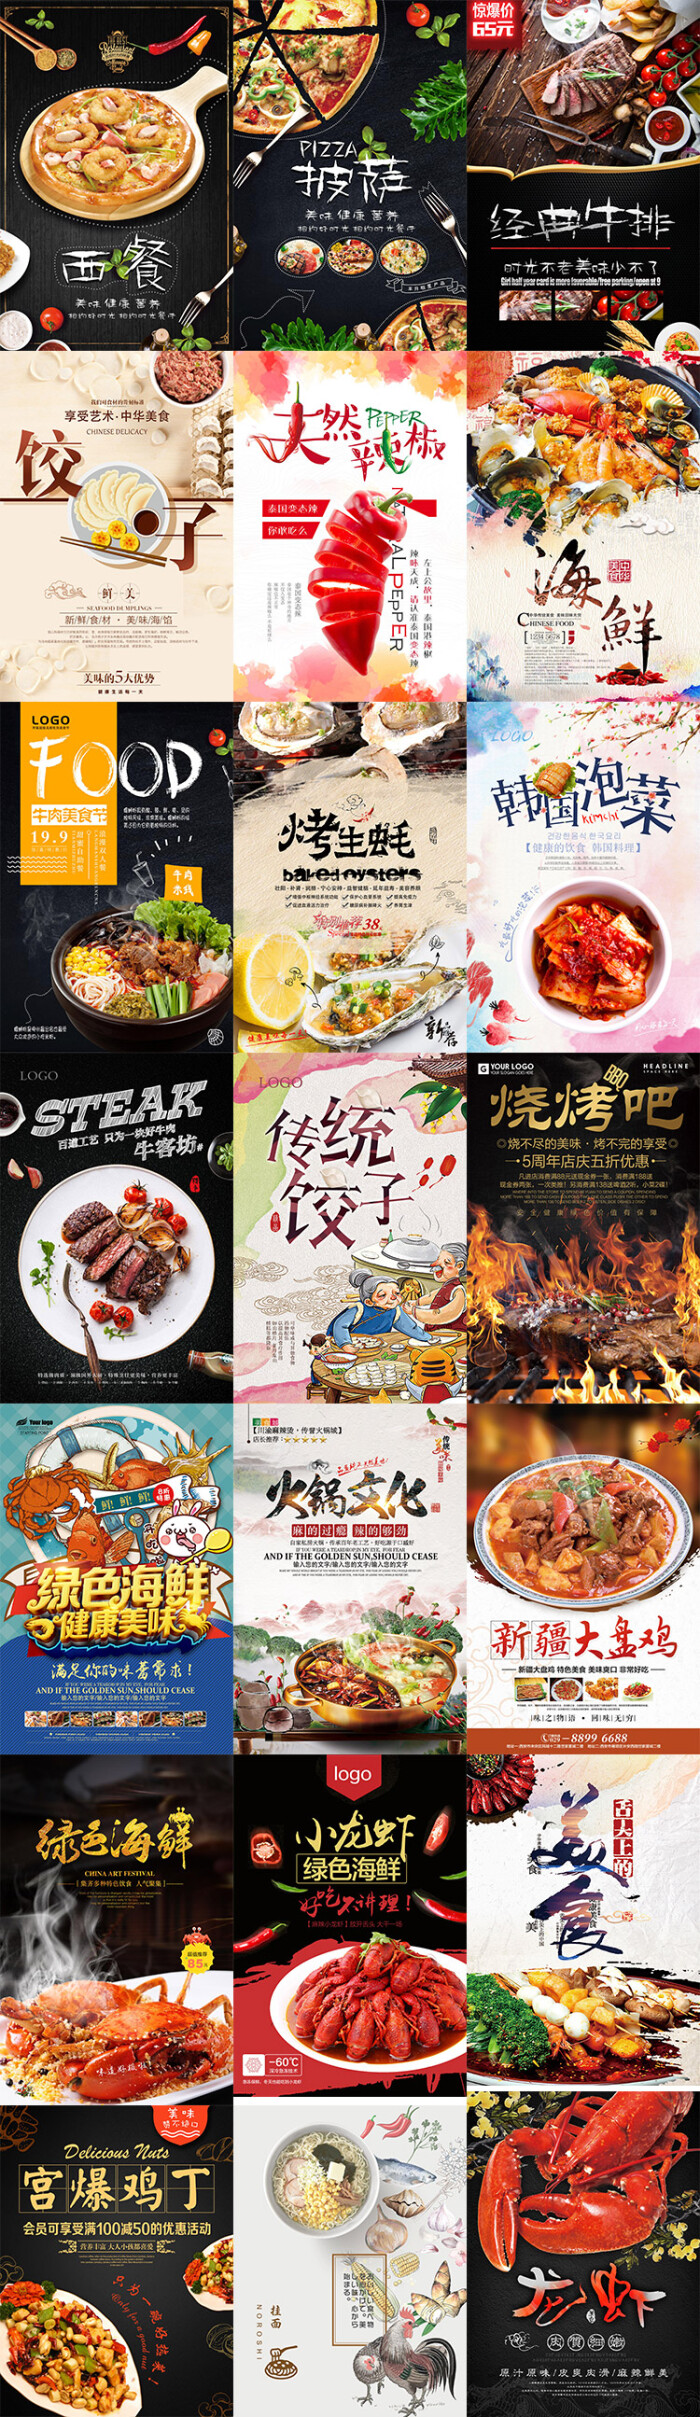 中华美食西餐餐厅饭店烧烤海鲜火锅海报传单ps模板设计素材图模版